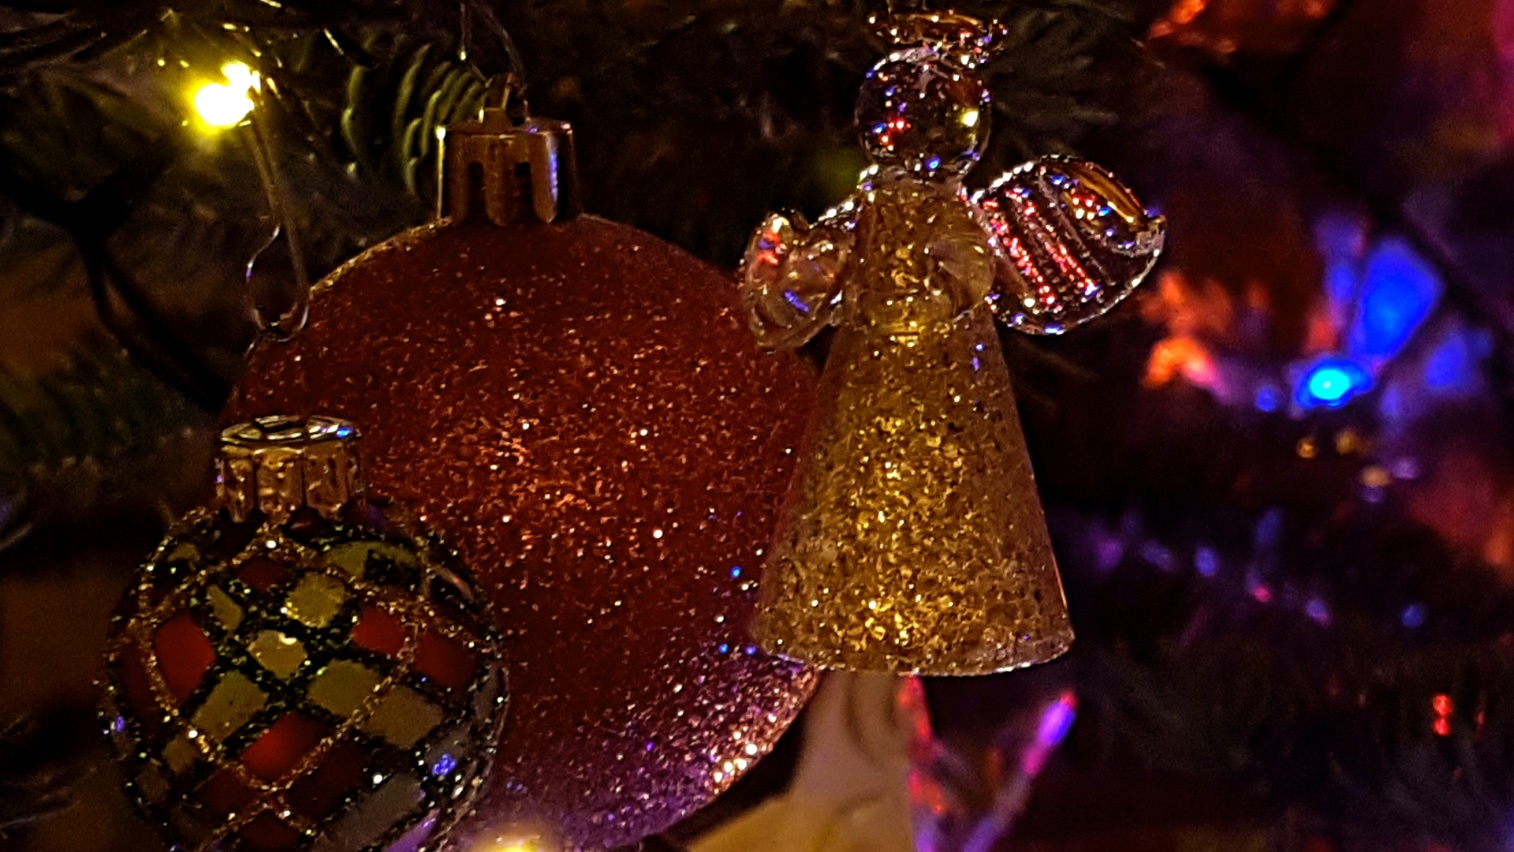 Slika, ki vsebuje besede Božič, božična jelka, božična dekoracija, praznični okrasek

Opis je samodejno ustvarjen